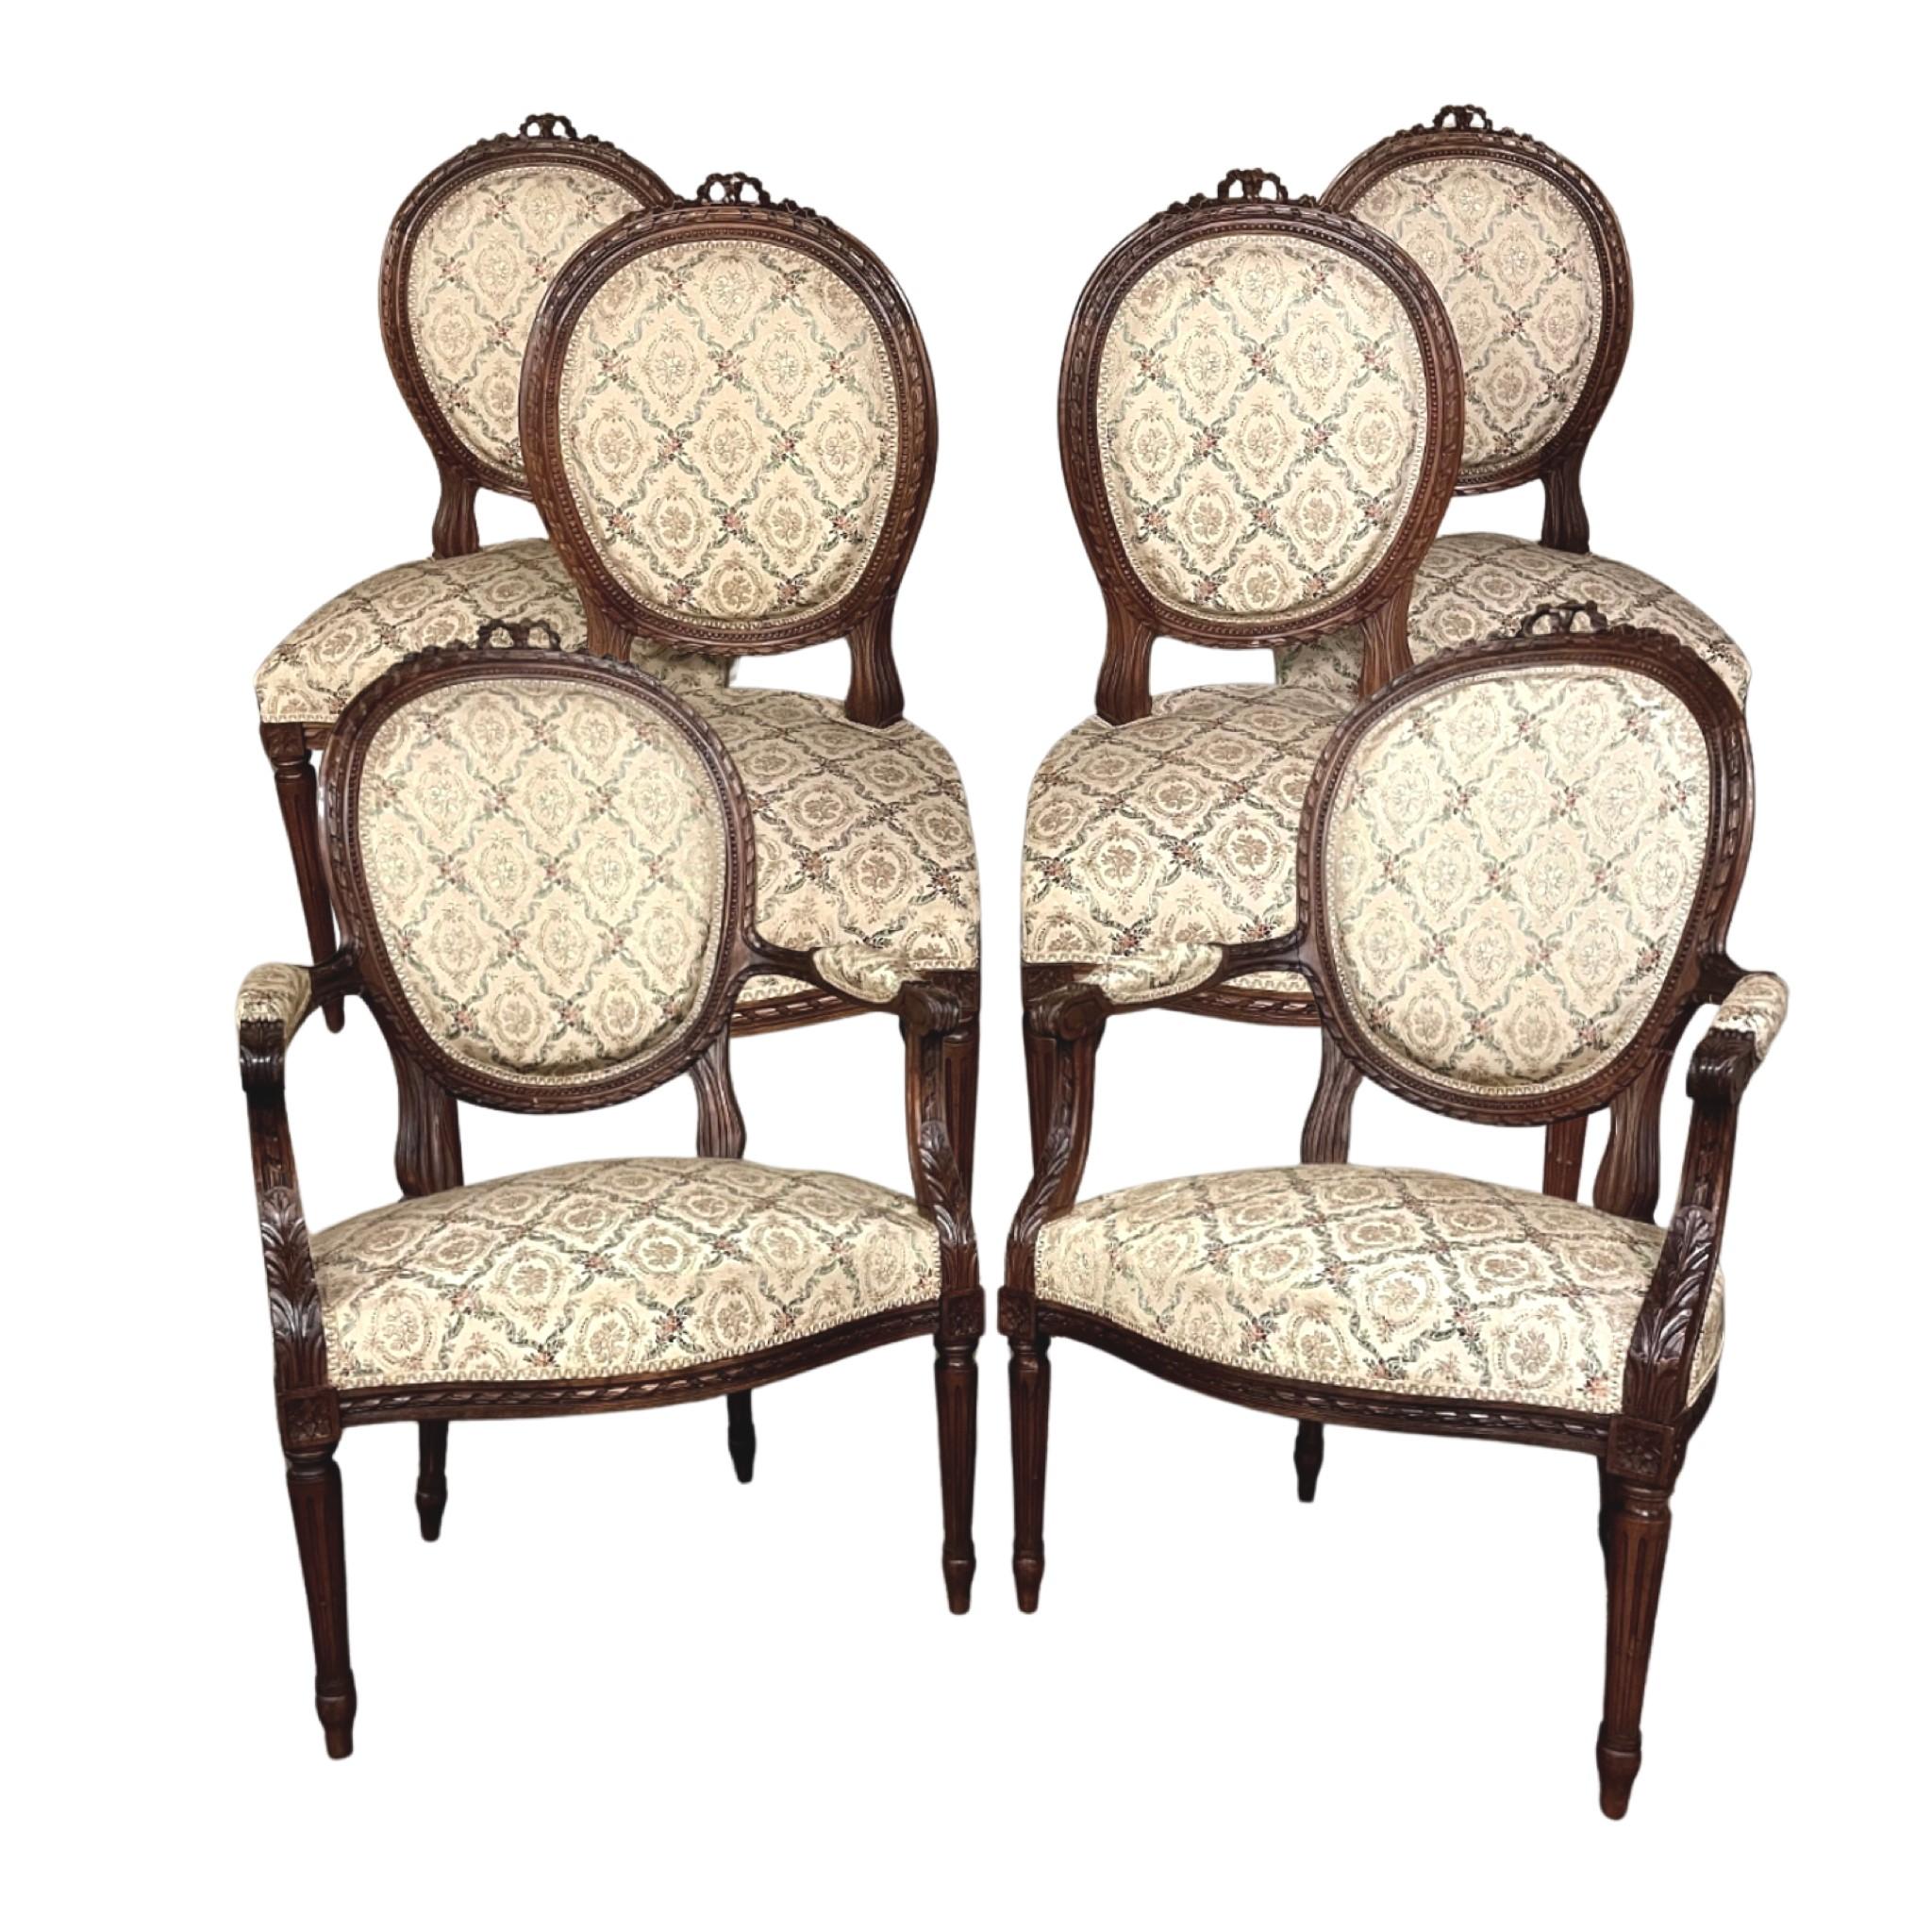 Pair 19. Jahrhundert Französisch Louis XVI Nussbaum Sessel ~ fauteuils ist wirklich ein zeitloser Klassiker! Die geschwungenen, ovalen Rückenlehnen und die großzügigen Sitze bieten einen überraschenden Komfort, und die sehr hohe Qualität der